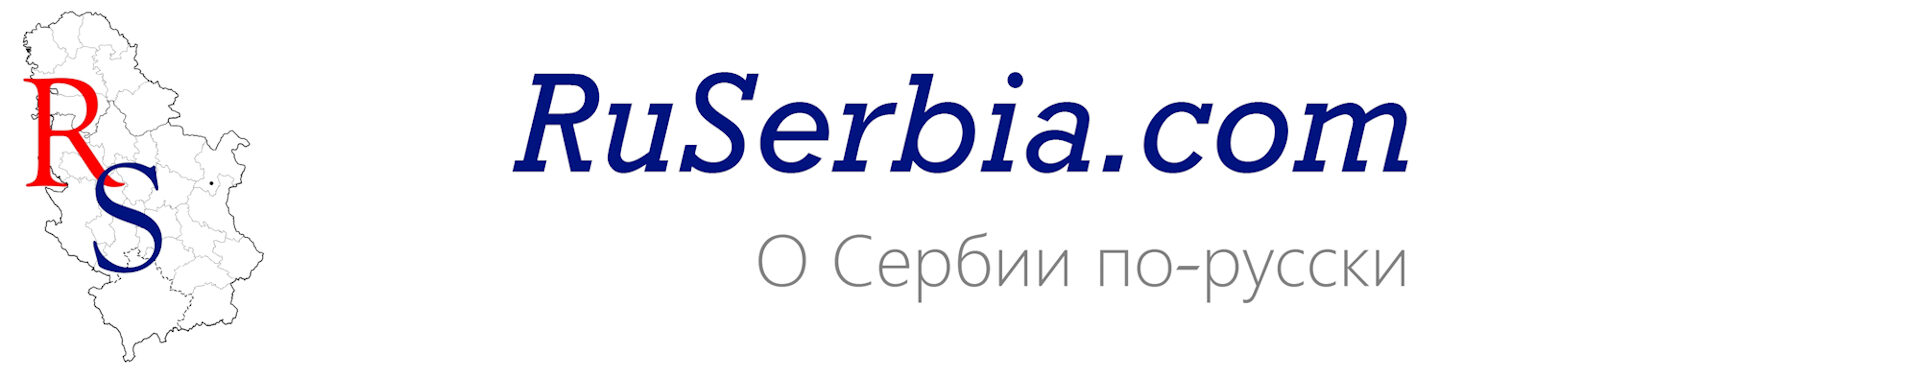 RuSerbia.com